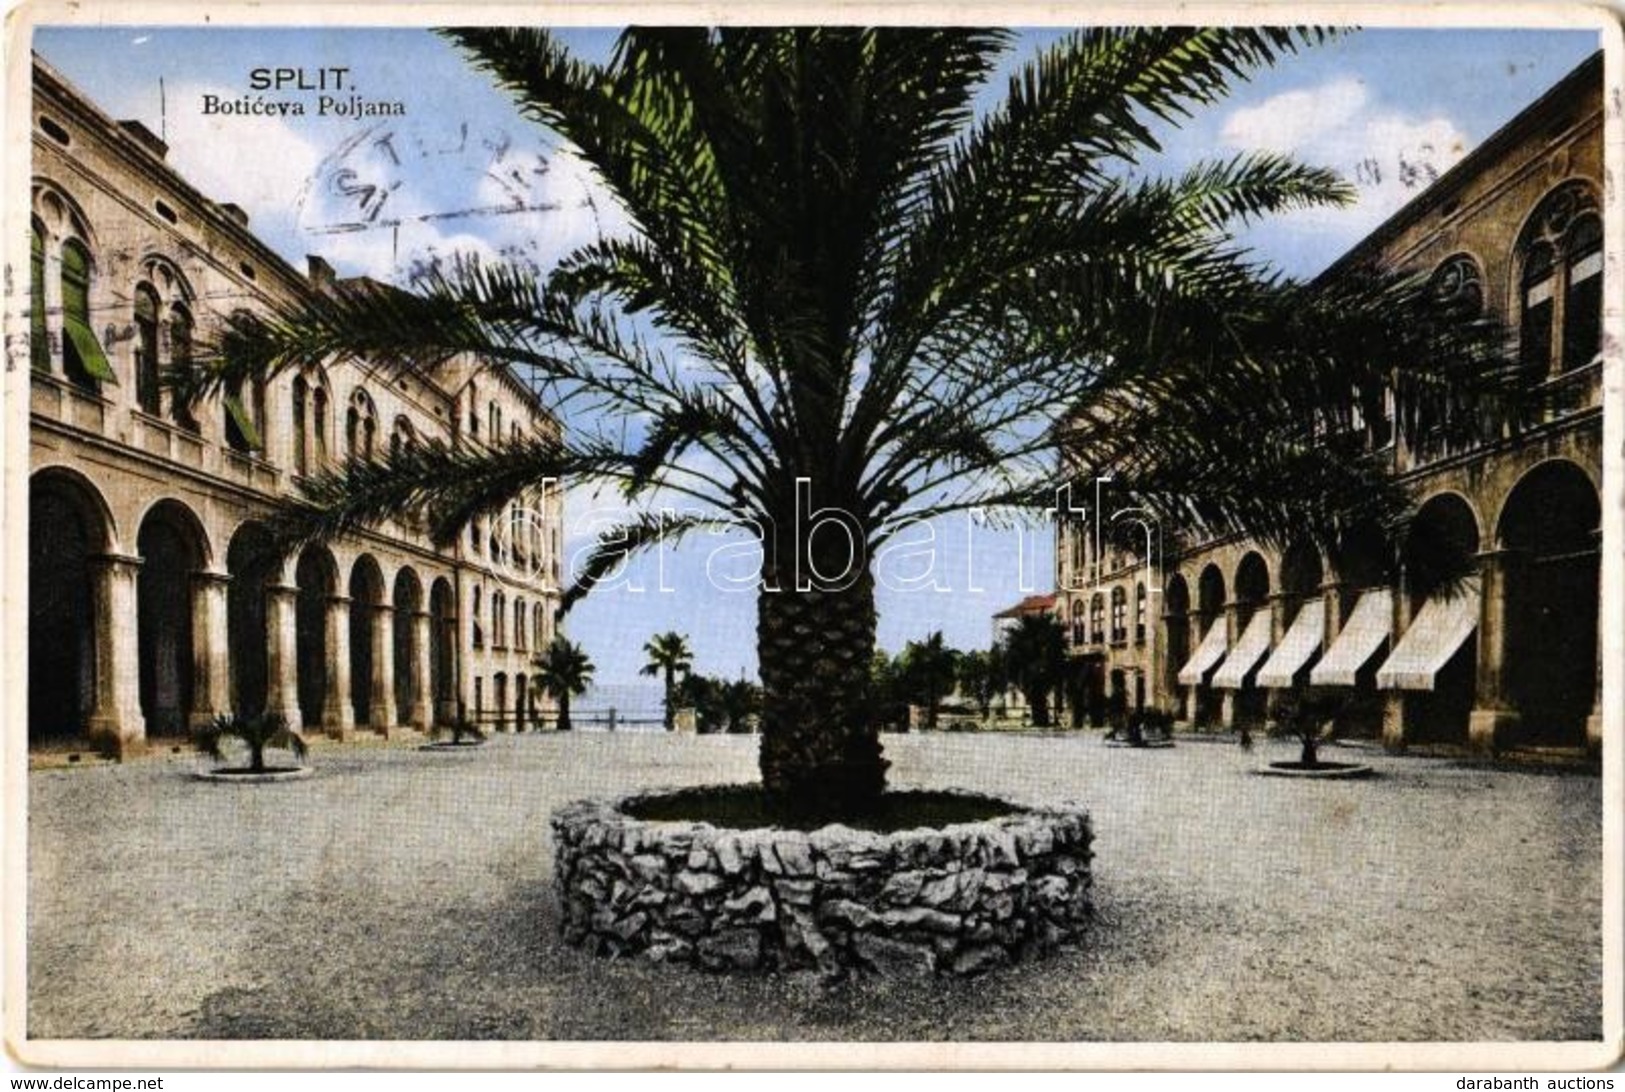 T2 1934 Split, Boticeva Poljana / Square, Palm Tree - Unclassified